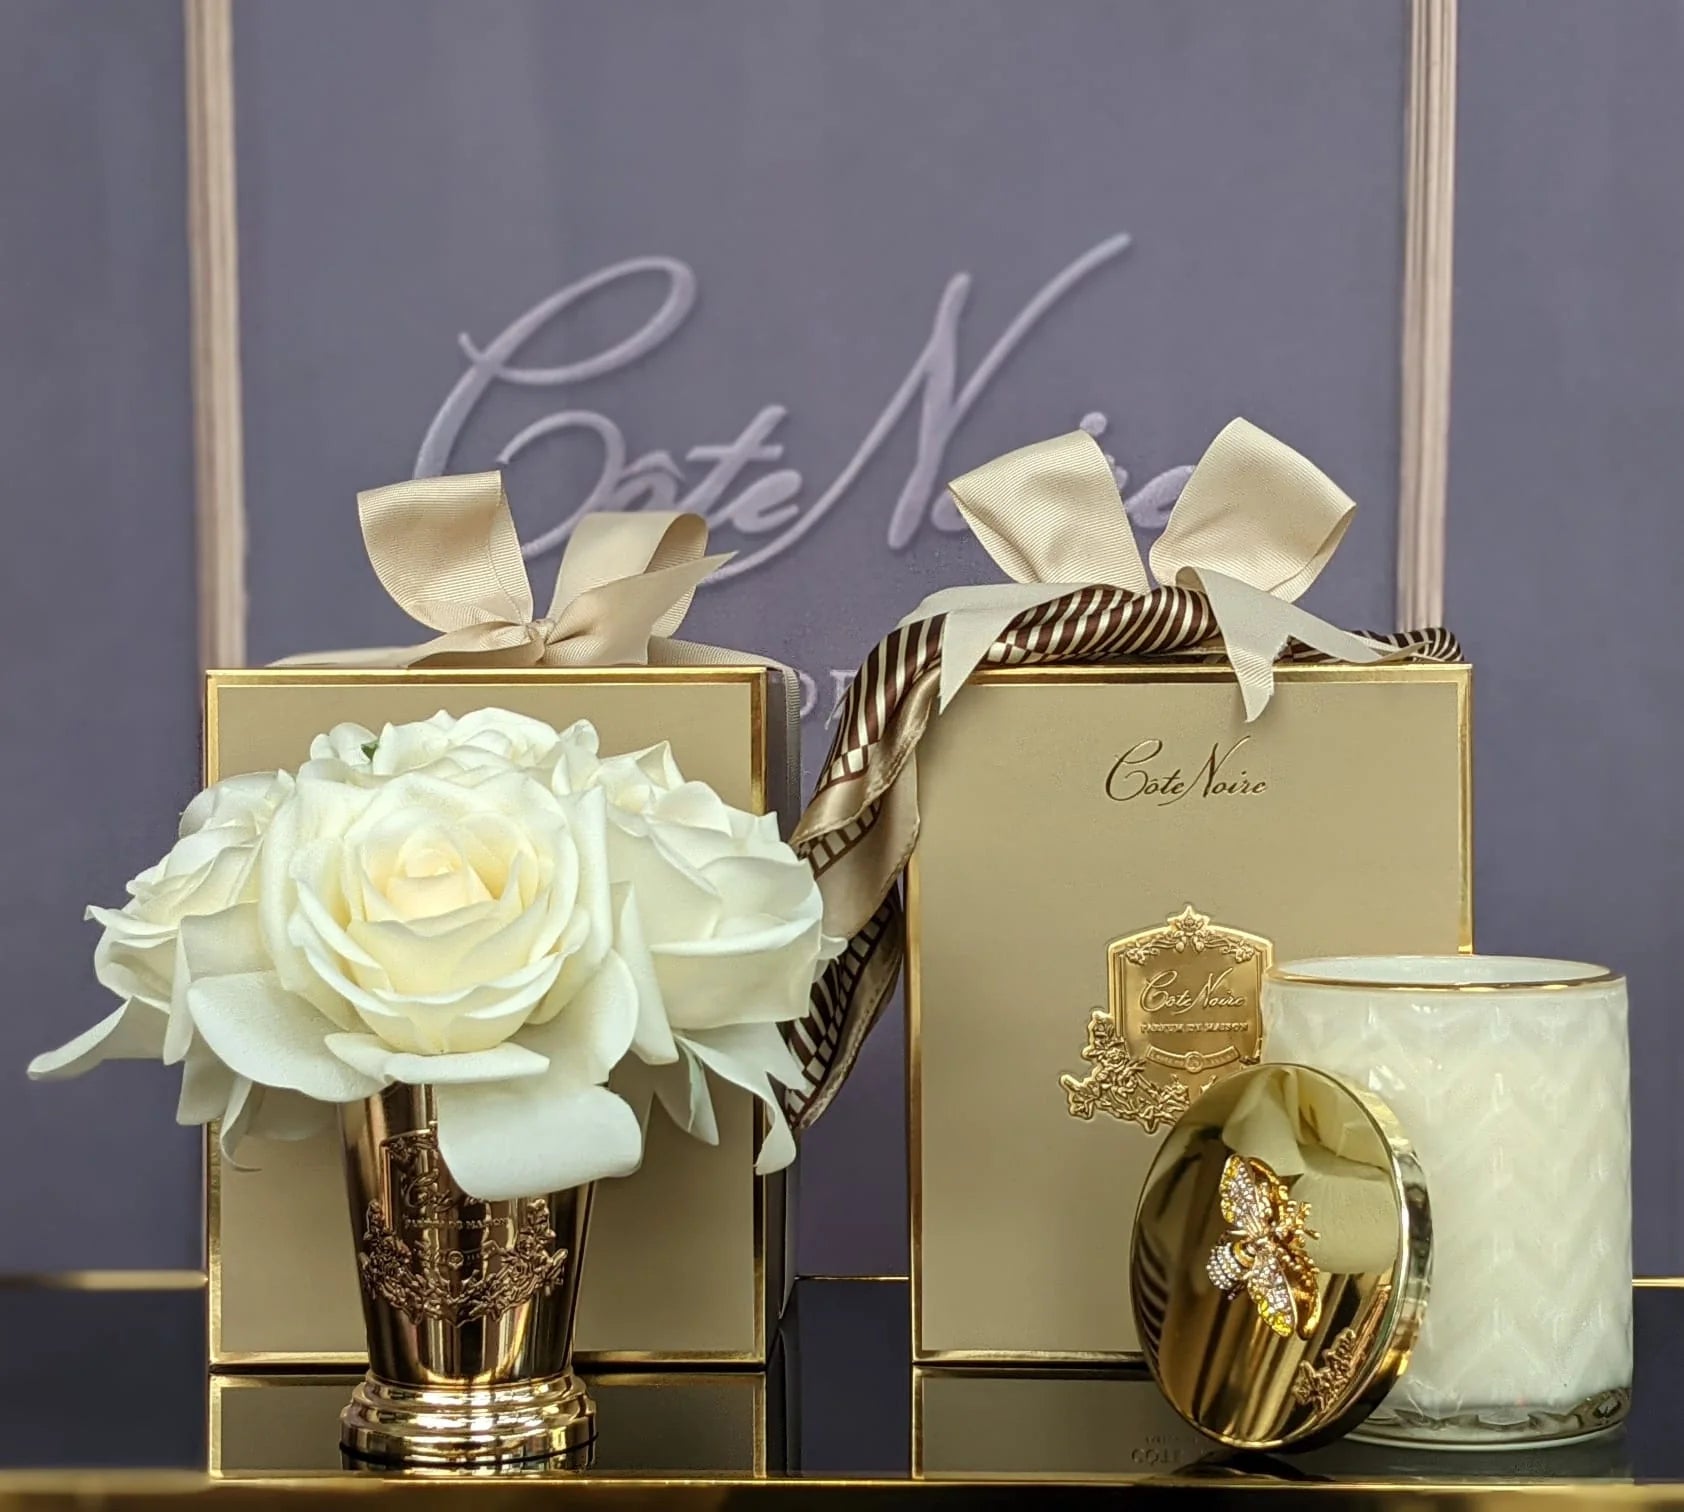 passendes set aus sieben rosen duftblume und herringbone duftkerze blonde vanilla mit identischen geschenkboxen.